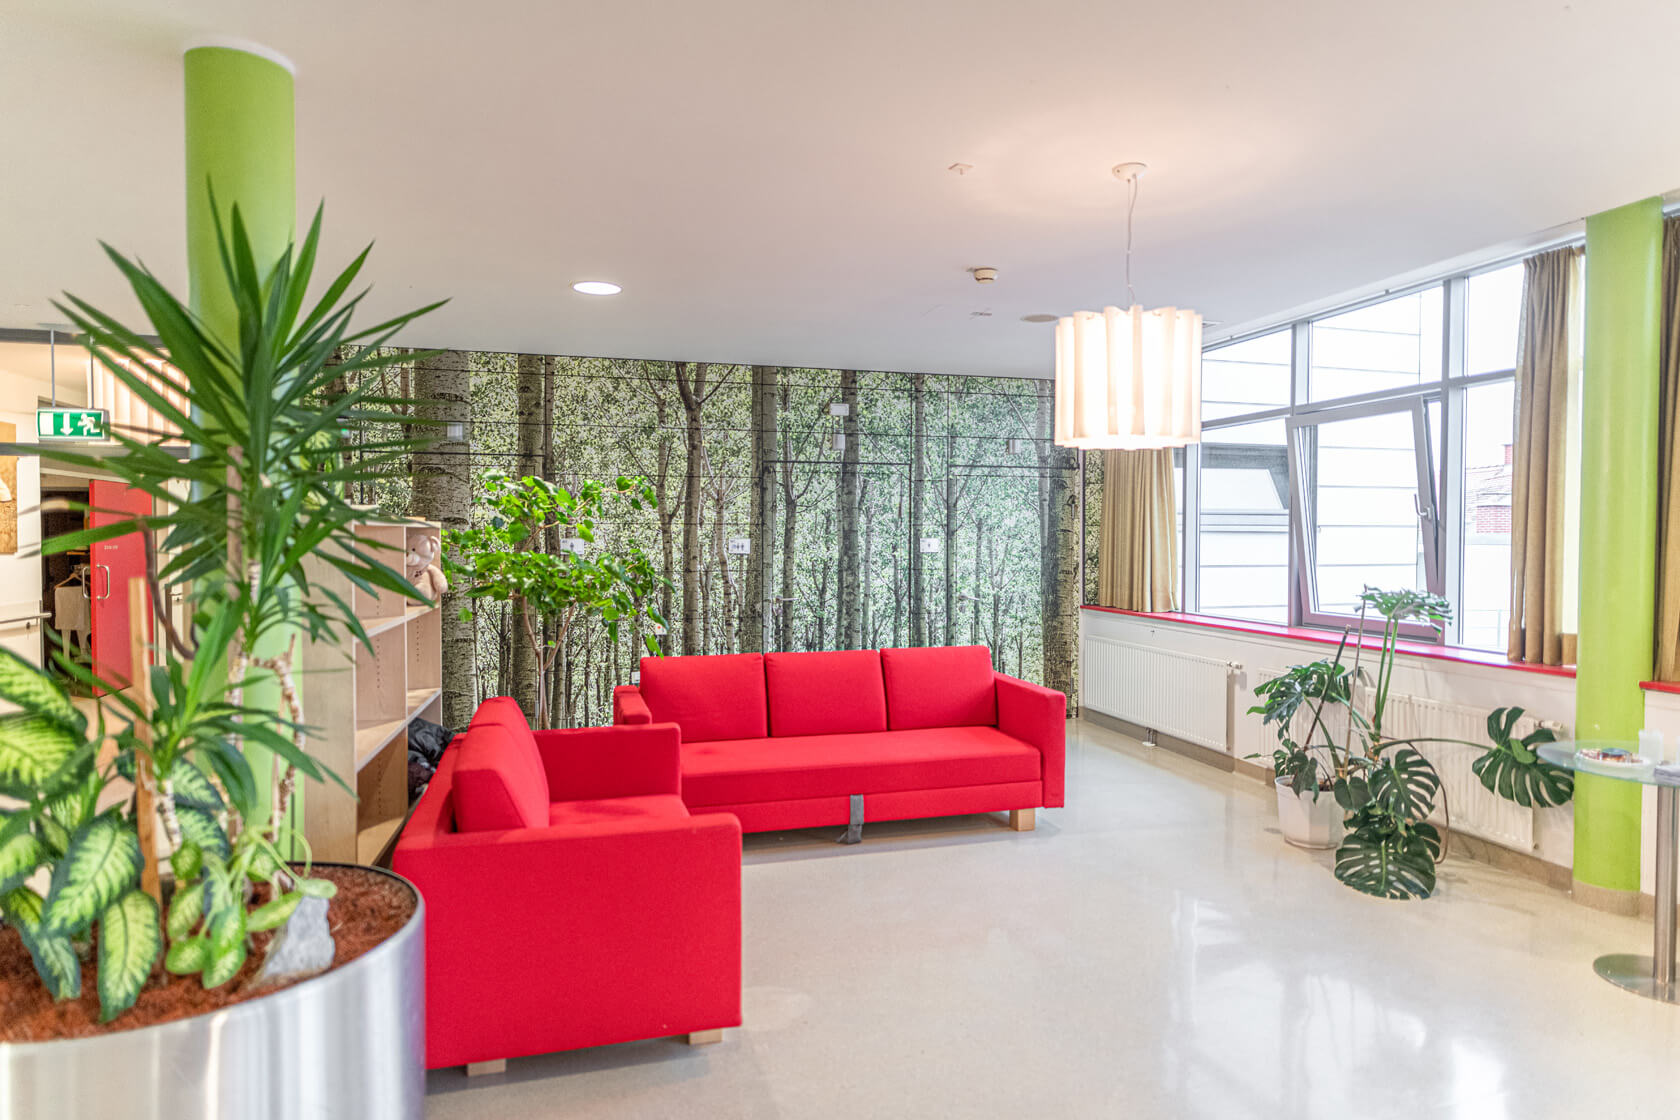 Zwei rote Sofas stehen im 90 Grad Winkel zueinander vor einem Regal und vor einer Wand, die mit einem Birkenwald-Bild tapeziert ist. Sie stehen gegenüber zu großen Fenstern und sind umgeben von Pflanzen